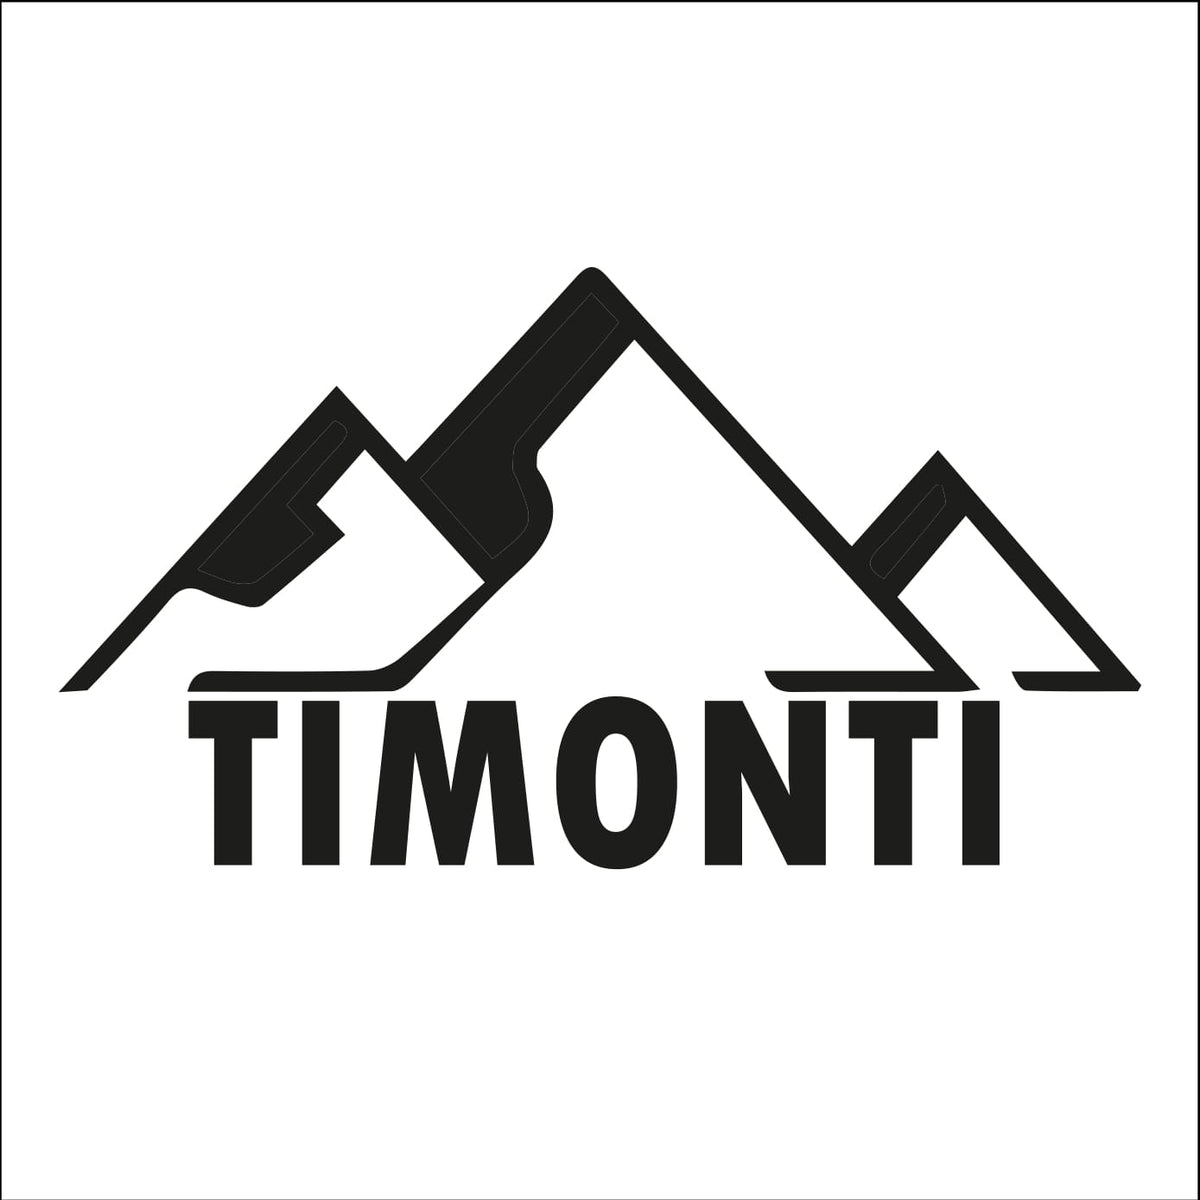 Timonti – Timonti Oficial